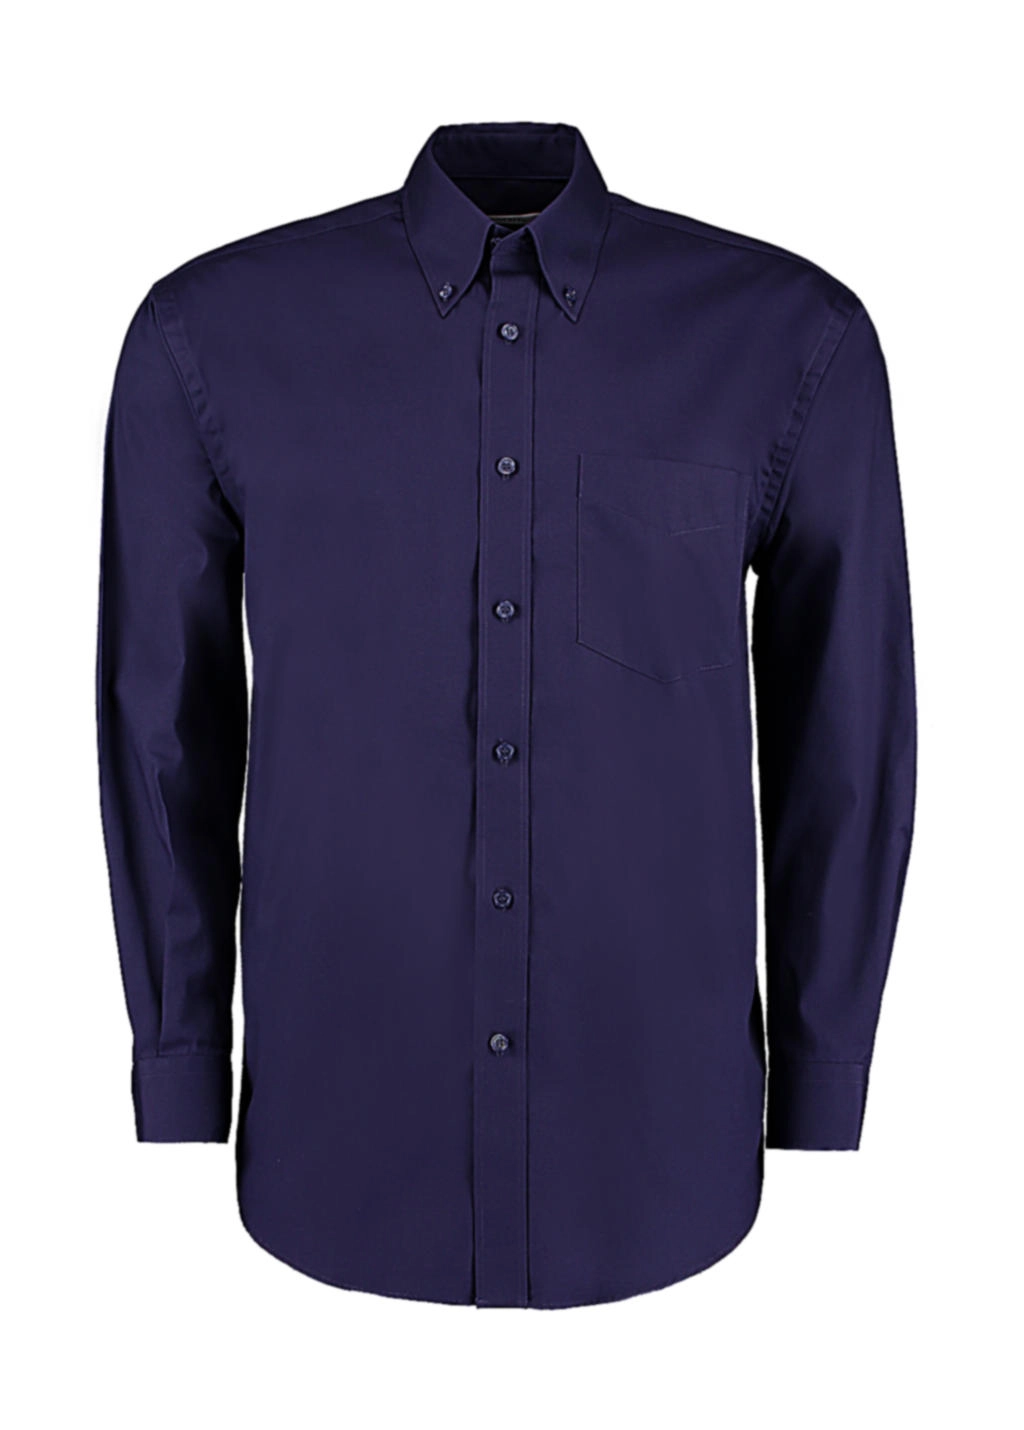 Classic Fit Premium Oxford Shirt zum Besticken und Bedrucken in der Farbe Midnight Navy mit Ihren Logo, Schriftzug oder Motiv.